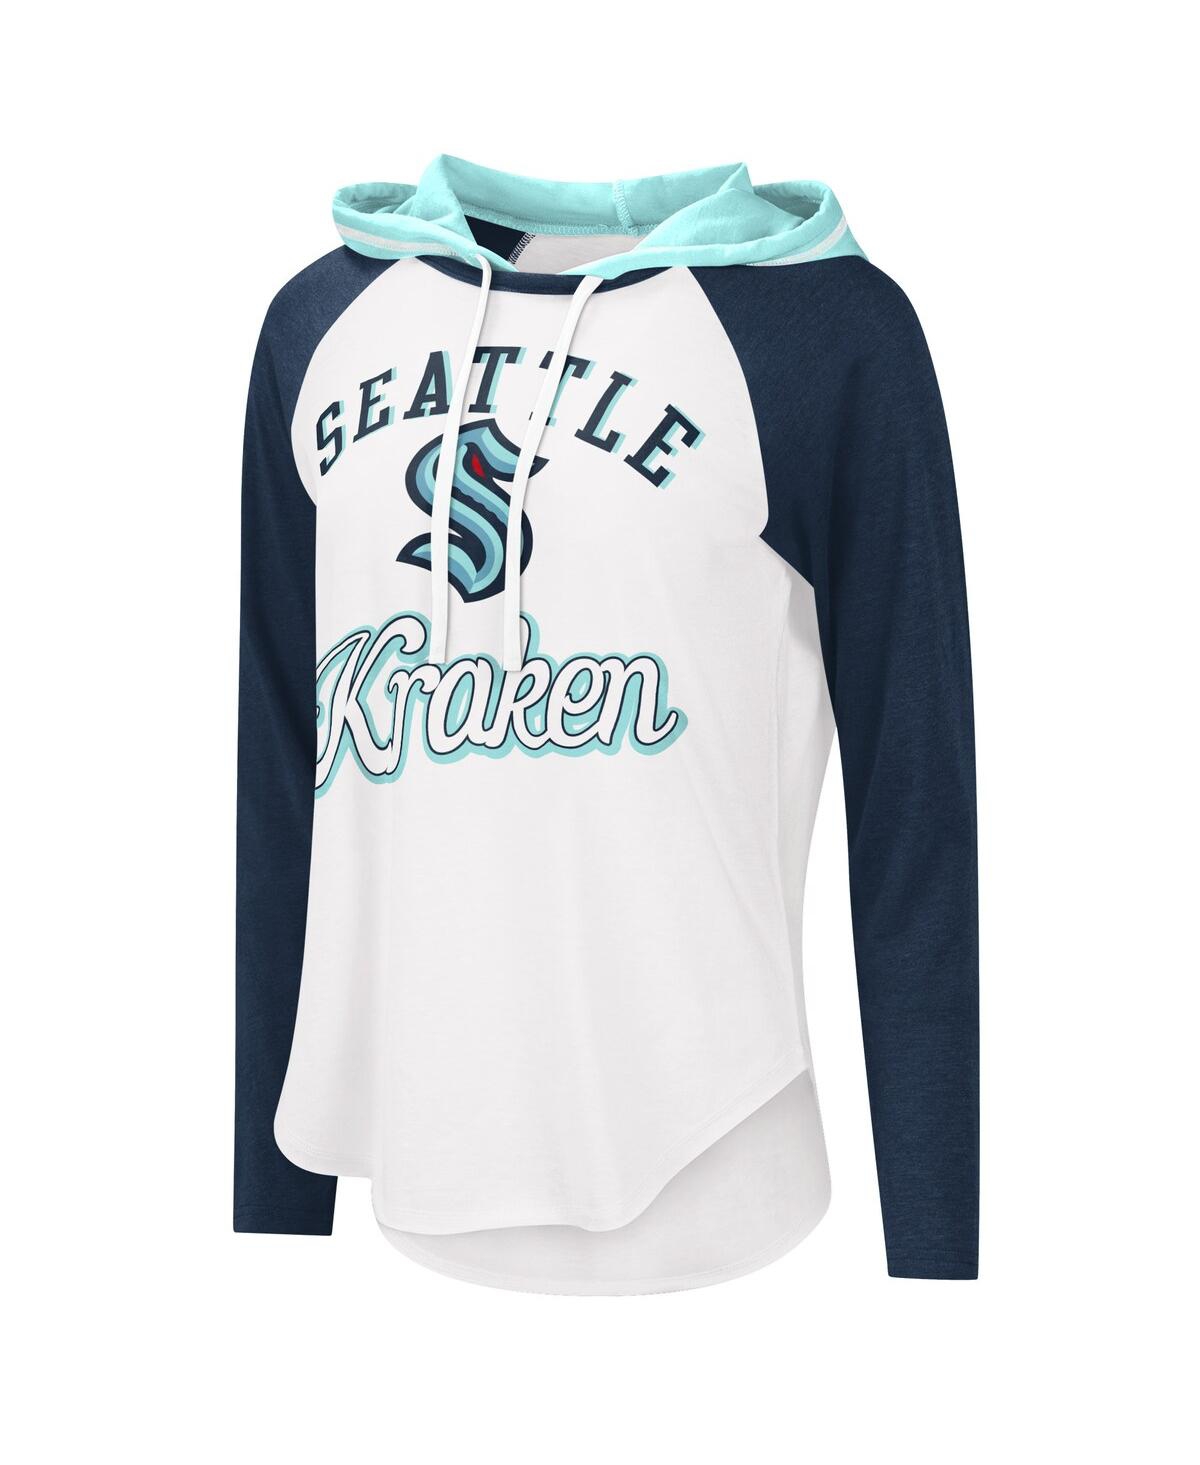 Nice kraken raglan pride runs deep shirt, hoodie, sweatshirt and long sleeve